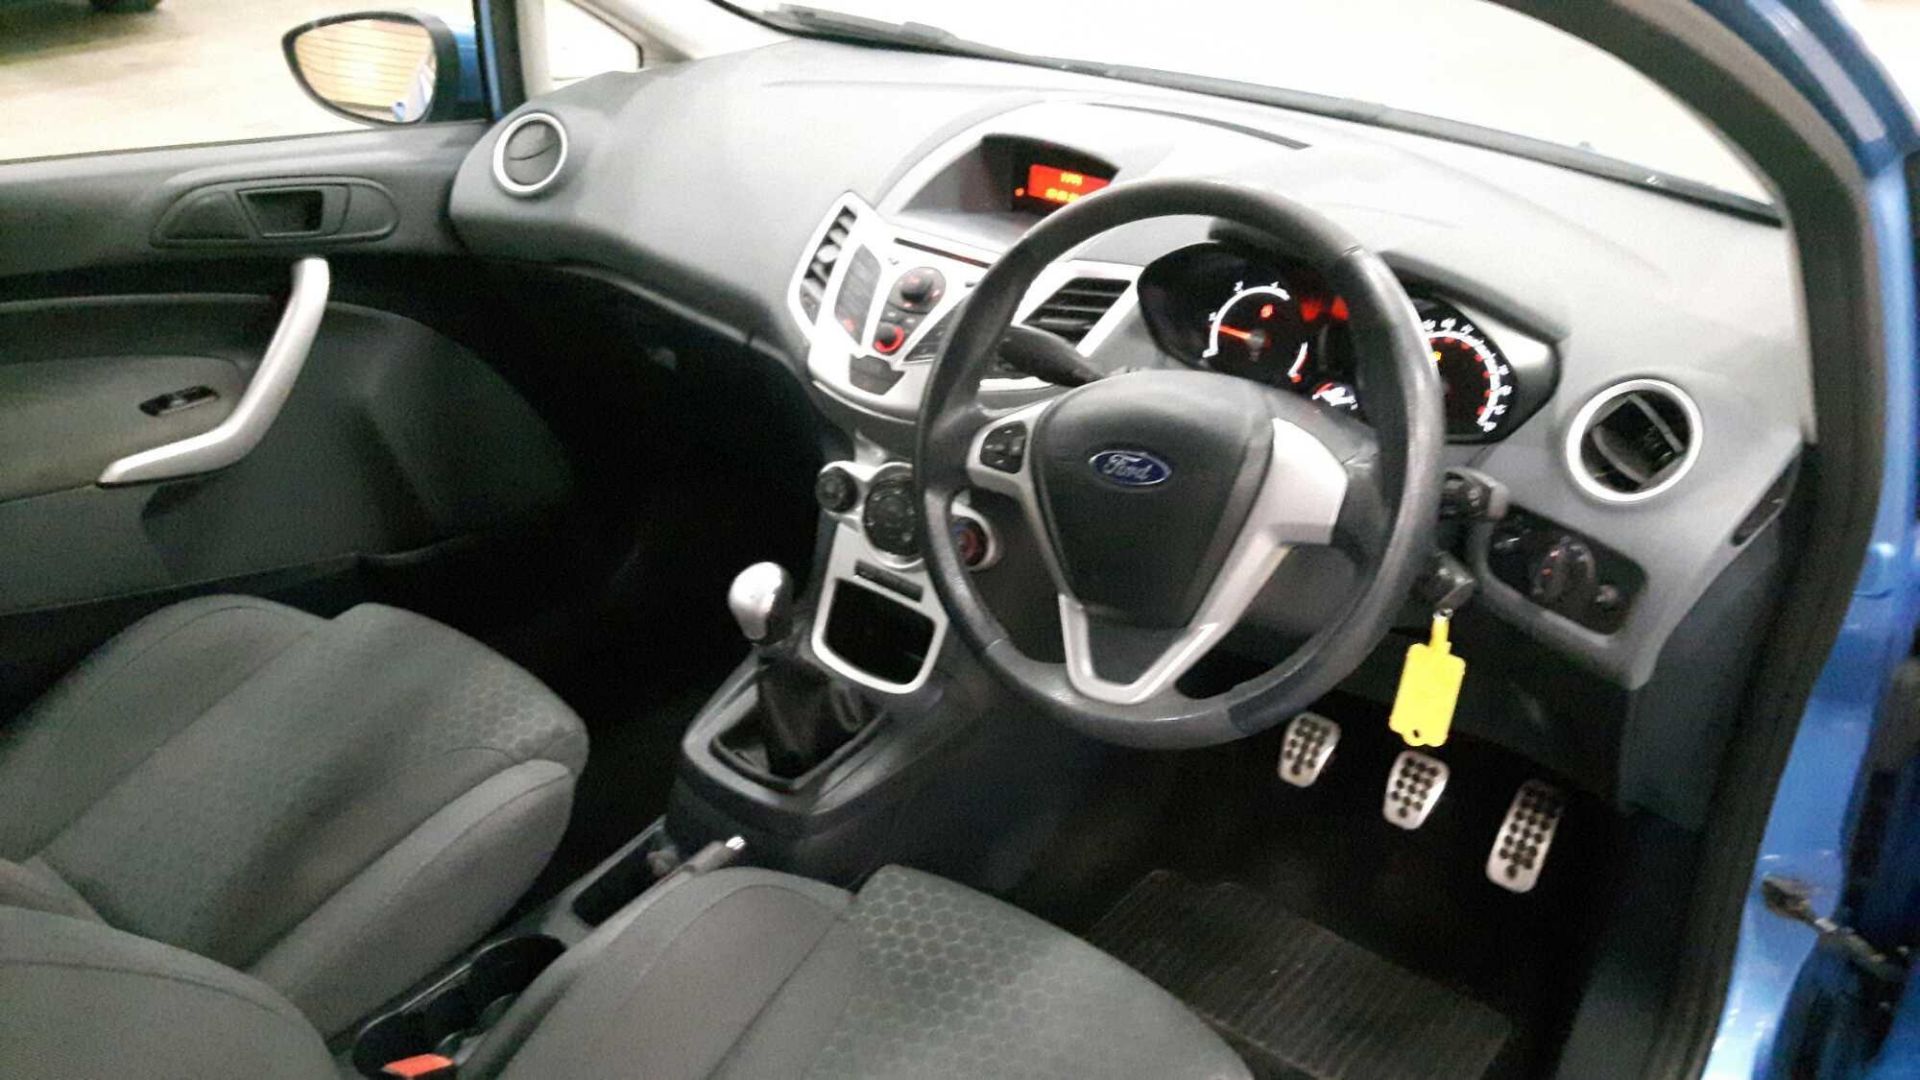 Ford Fiesta Zetec S Tdci - 1560cc 3 Door - Image 5 of 6